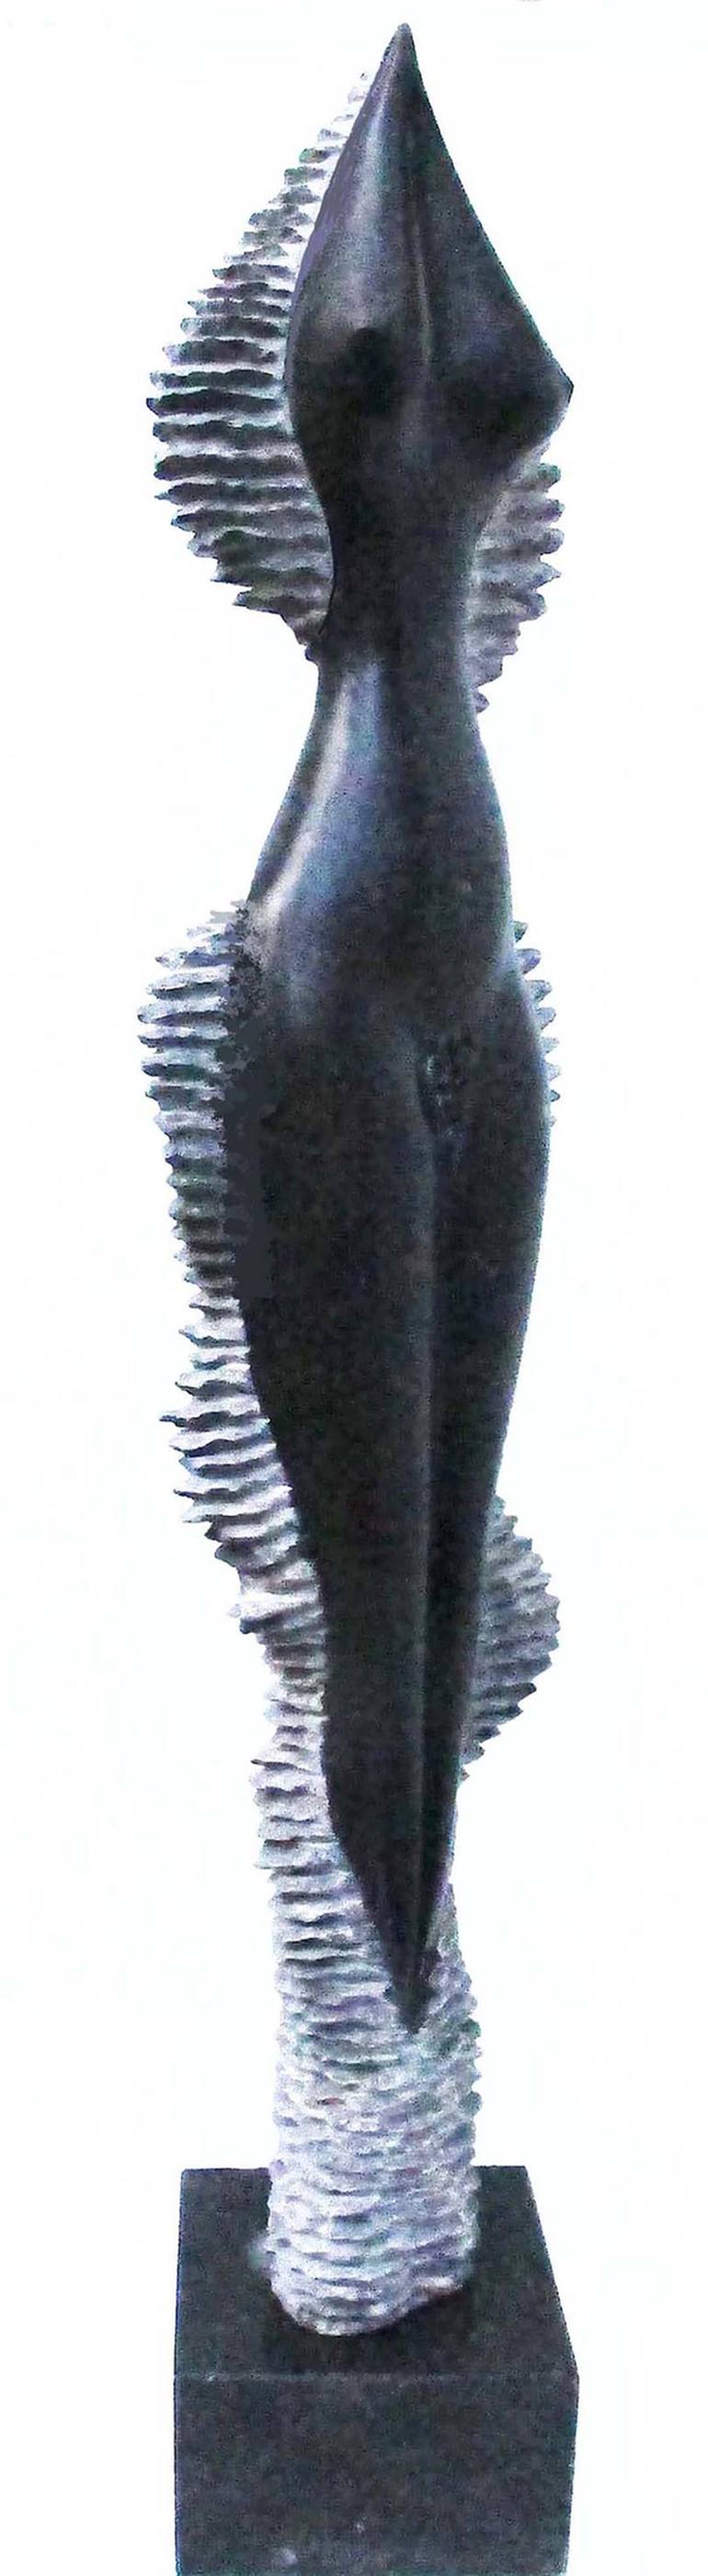 Original Modern Women Sculpture by Marian C SAVA